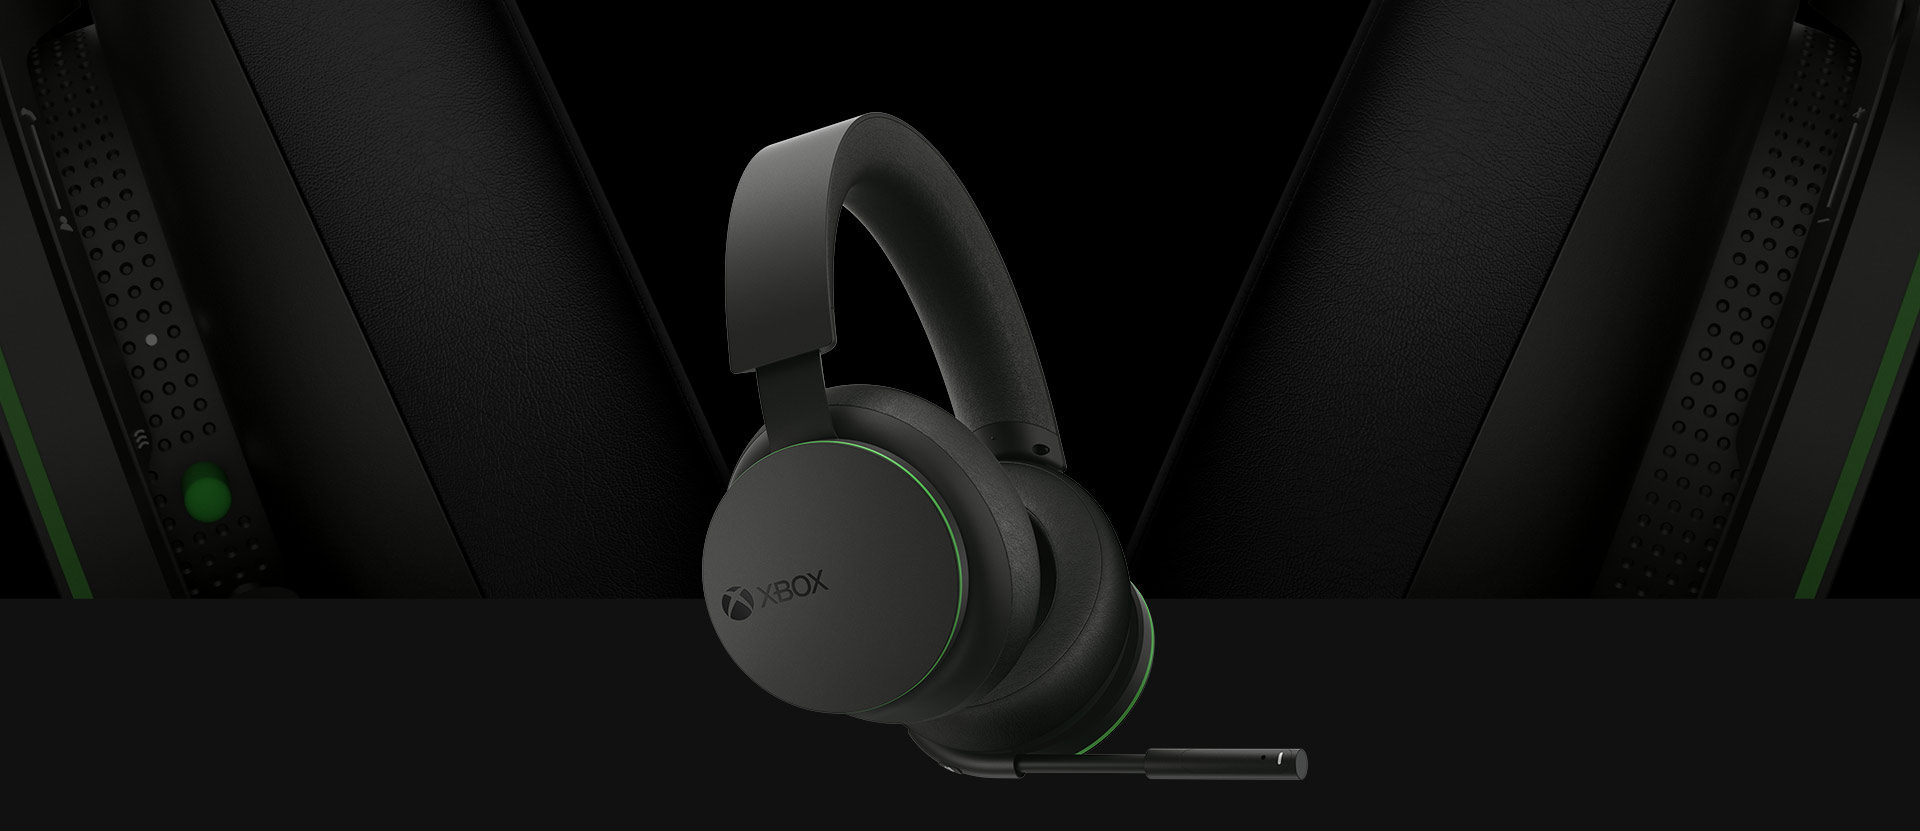 Xbox 无线耳机正面视图。耳机后方是一张更大的耳机细节图。